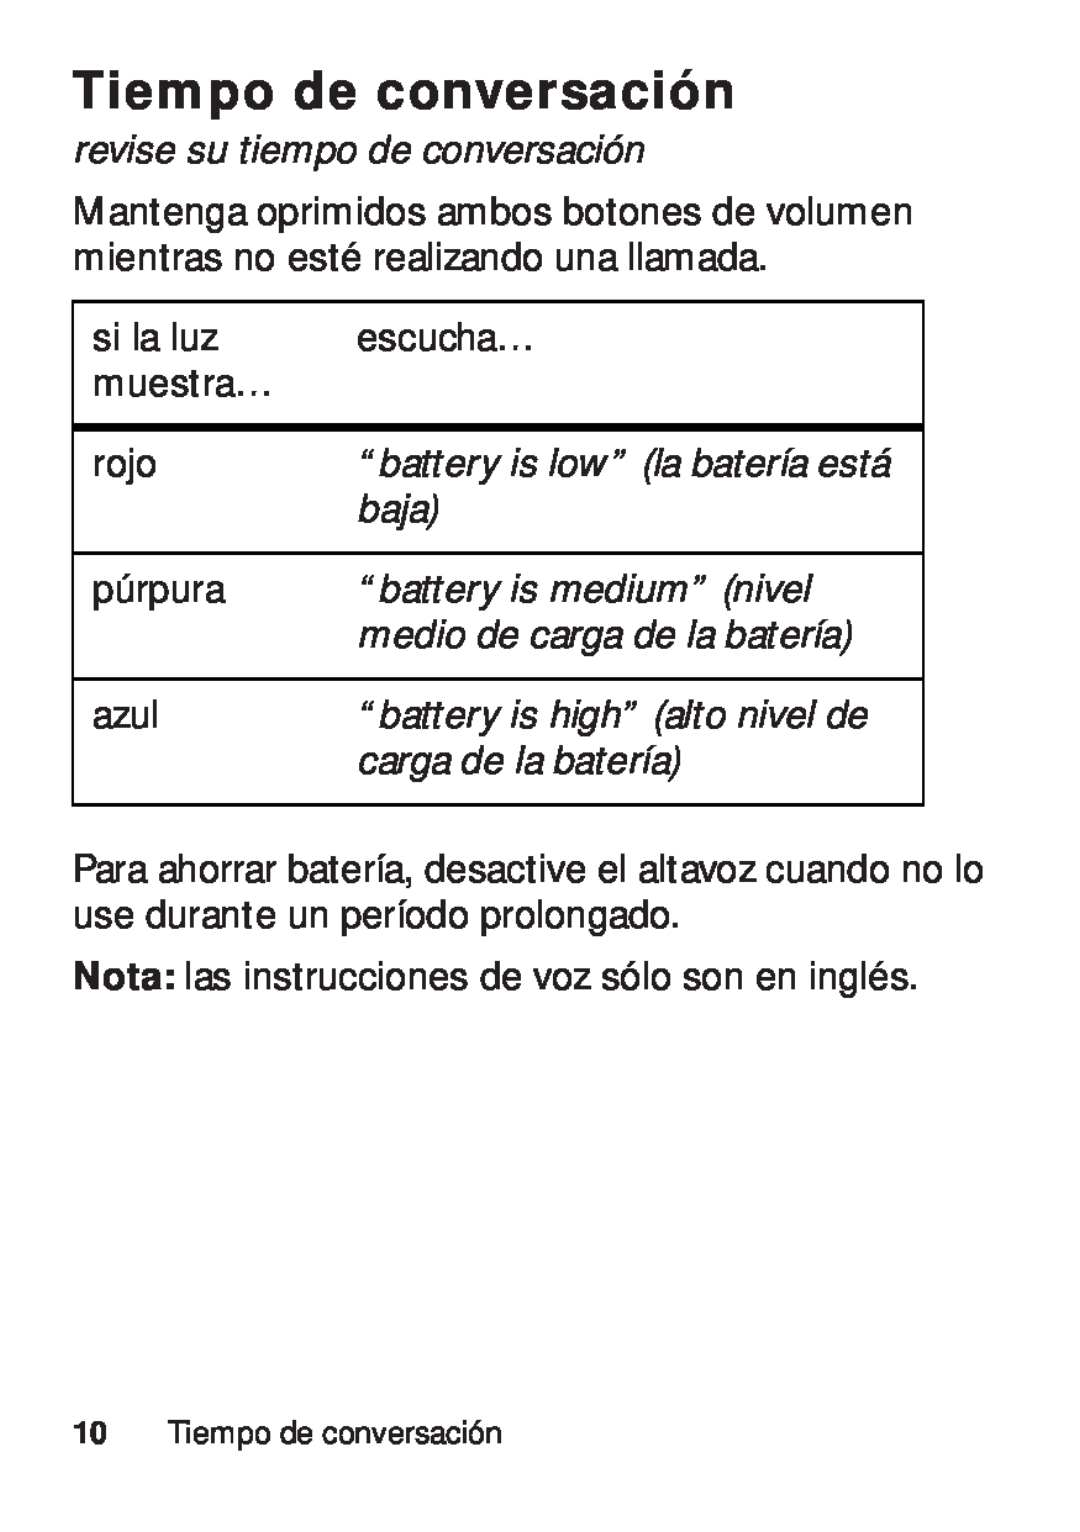 Motorola TX500 manual Tiempo de conversación, revise su tiempo de conversación, “battery is low” la batería está, baja 